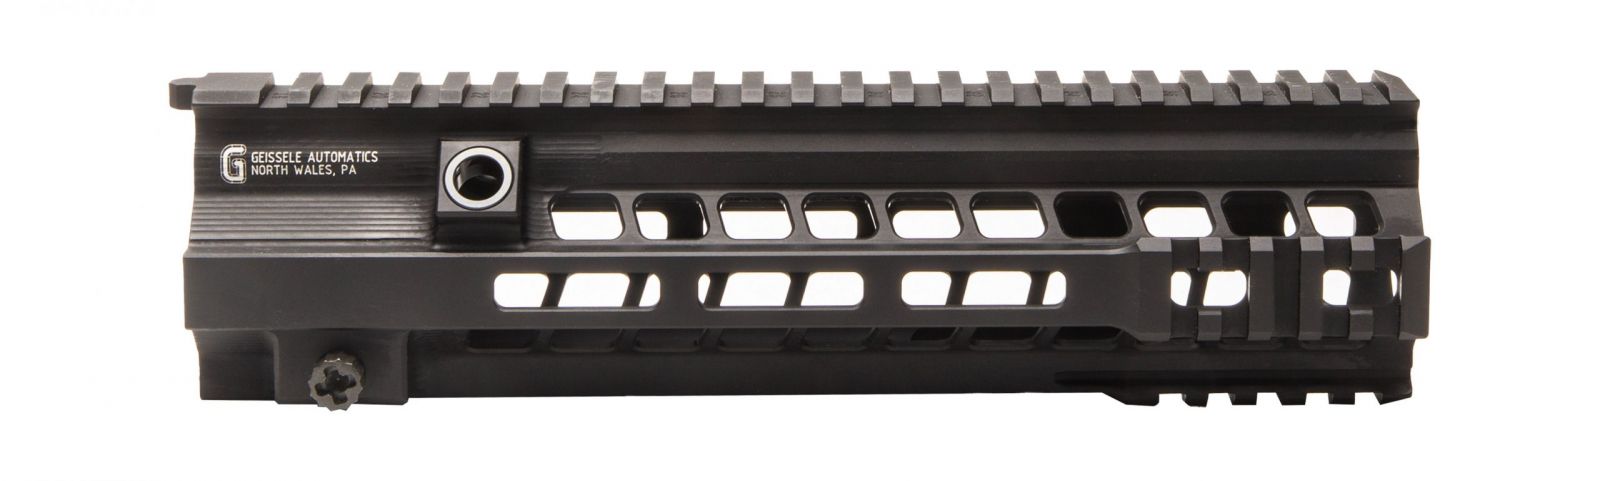 Předpažbí Geissele Super Modular MK15 - 10,5", M-LOK, černé, pro HK416